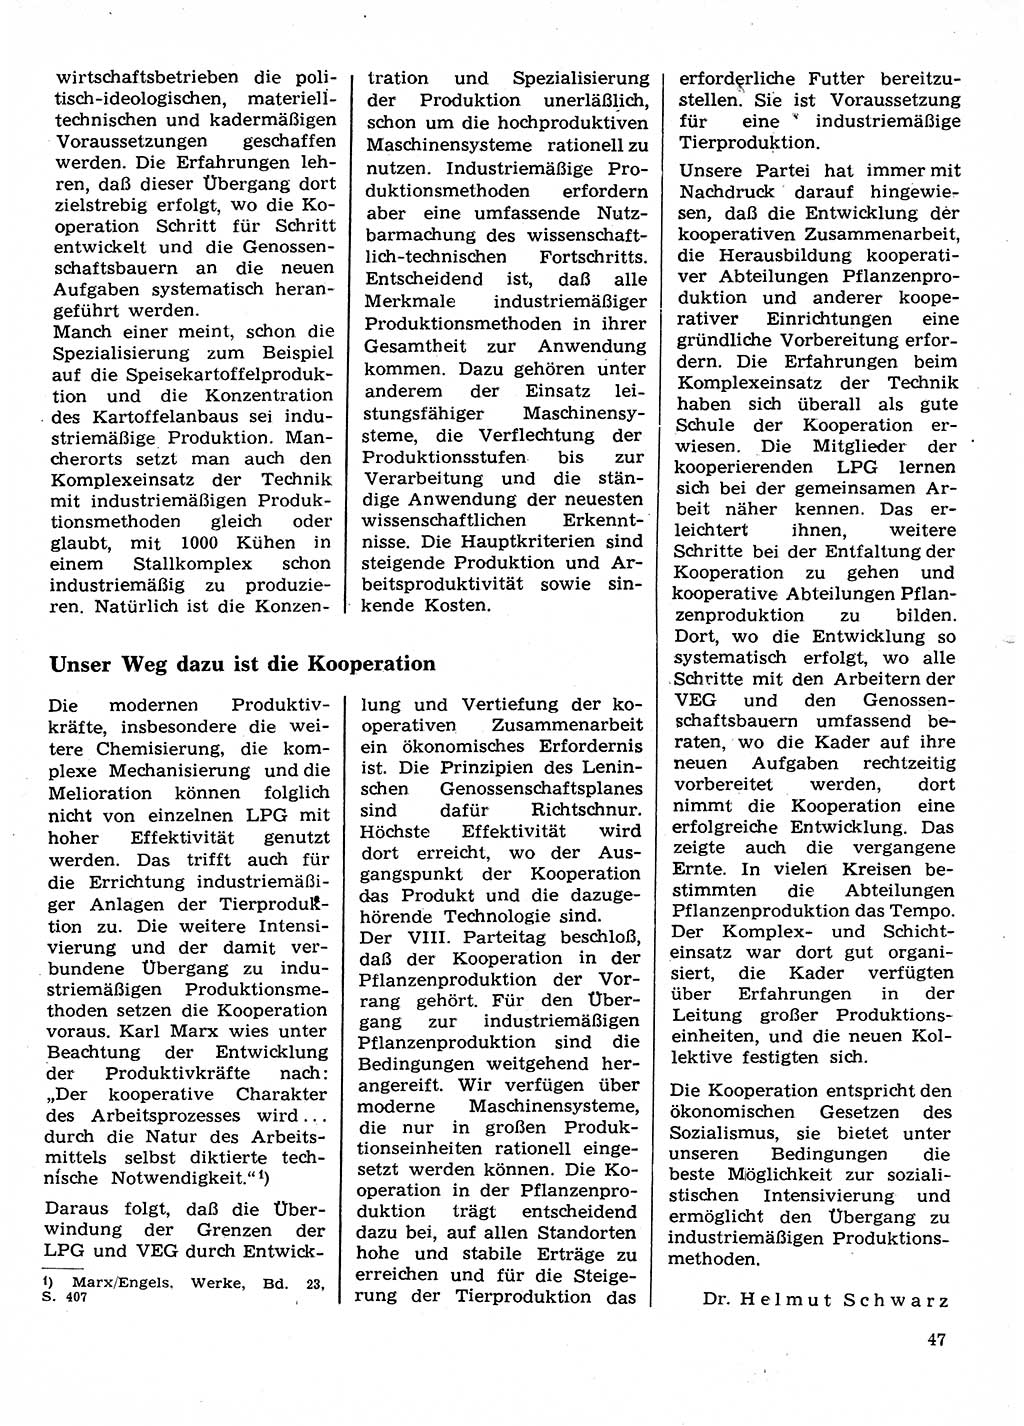 Neuer Weg (NW), Organ des Zentralkomitees (ZK) der SED (Sozialistische Einheitspartei Deutschlands) für Fragen des Parteilebens, 28. Jahrgang [Deutsche Demokratische Republik (DDR)] 1973, Seite 47 (NW ZK SED DDR 1973, S. 47)